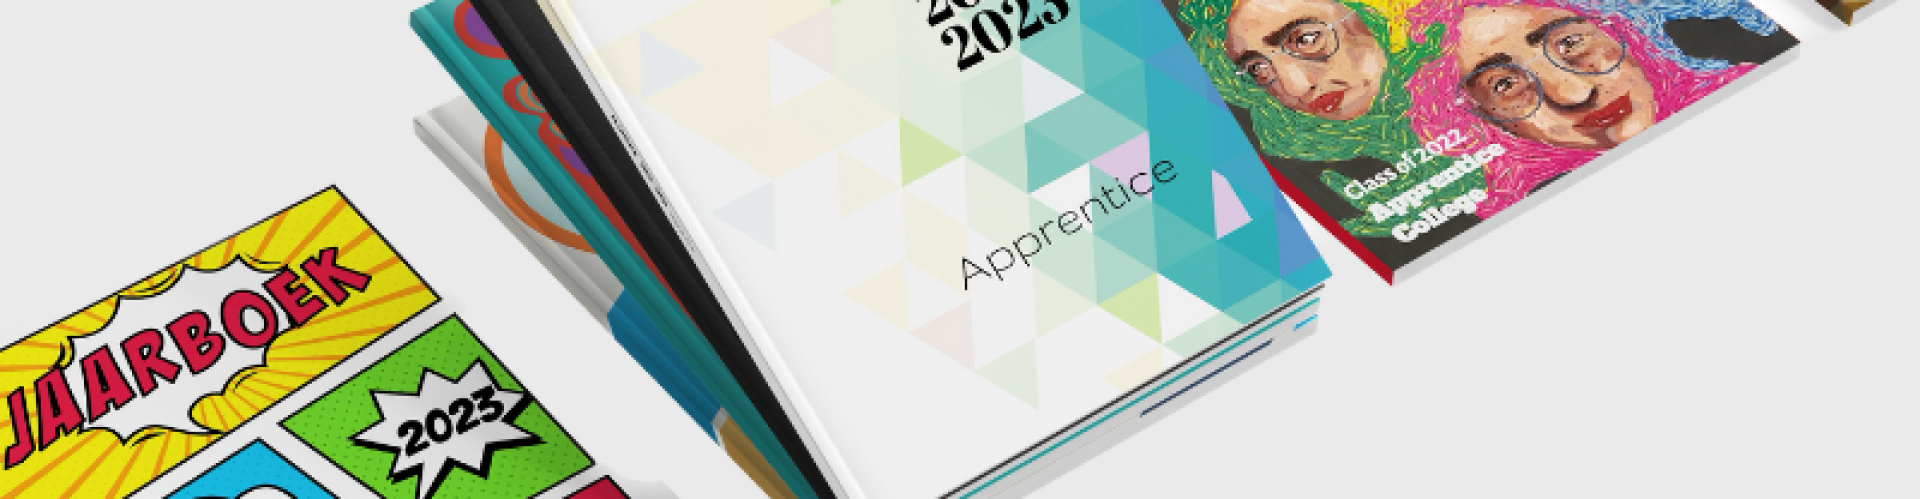 Vier covers van onze jaarboeksjablonen Apprentice